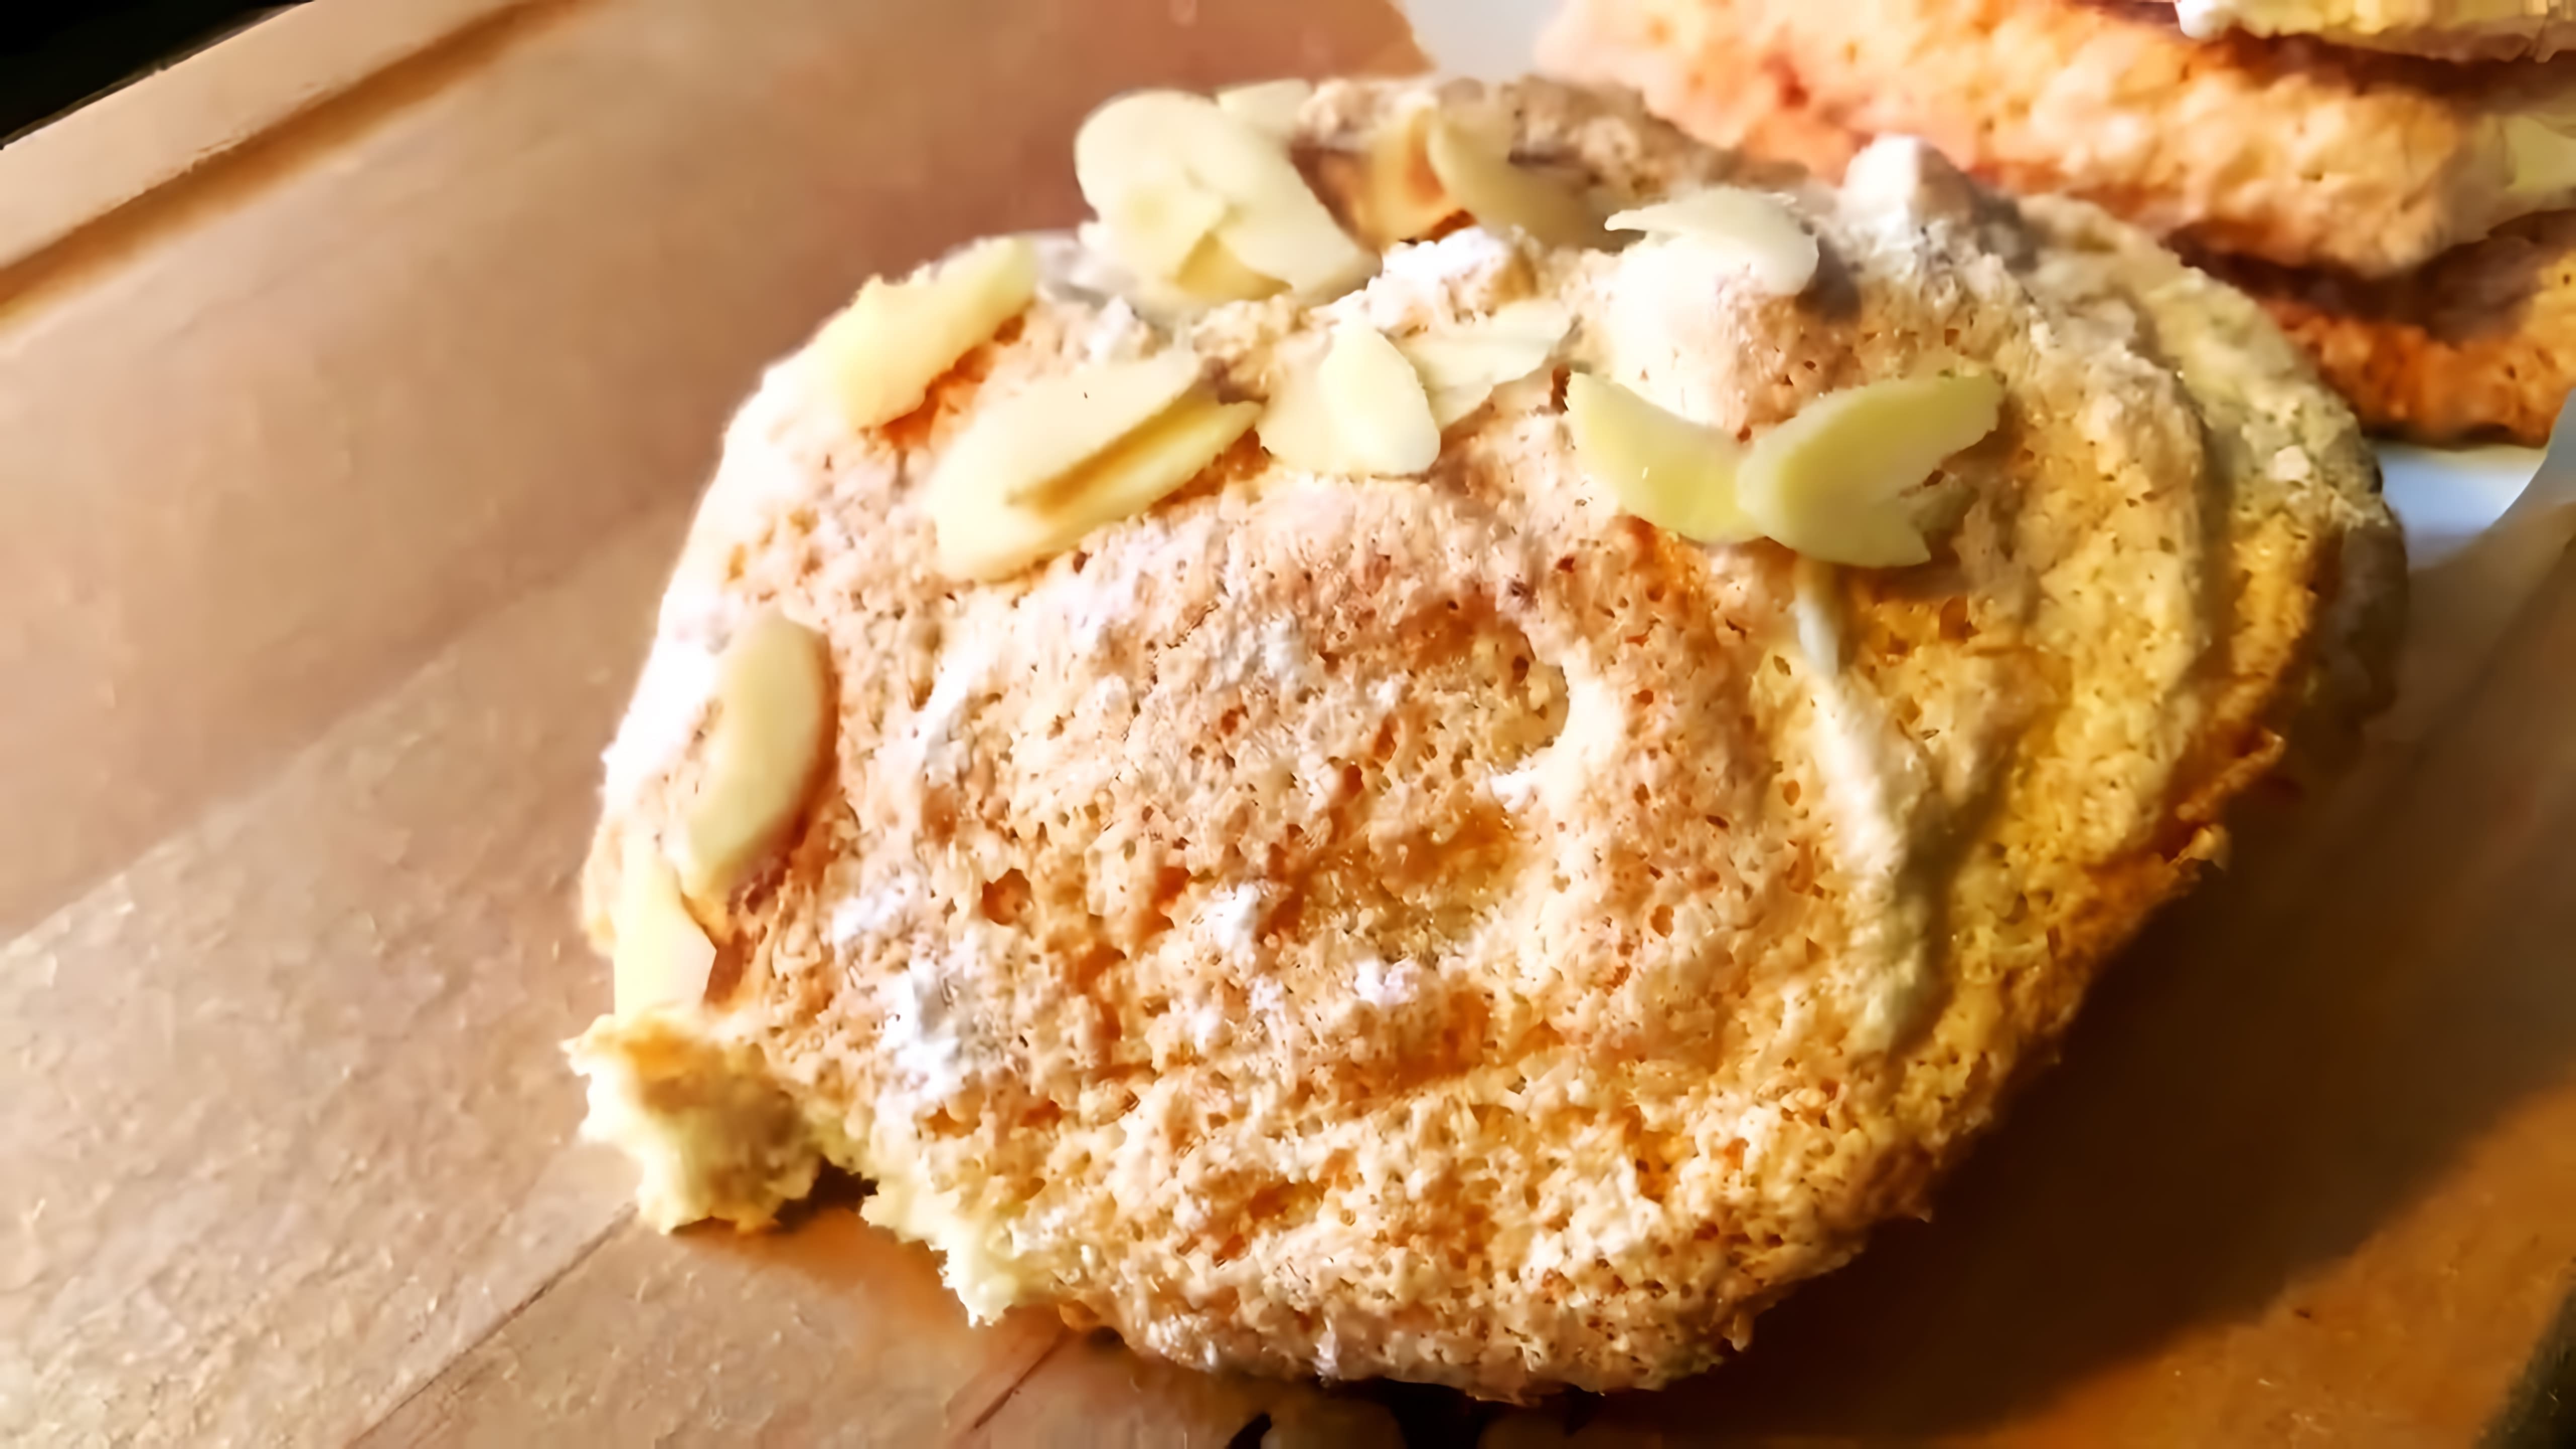 В данном видео демонстрируется рецепт приготовления миндального печенья